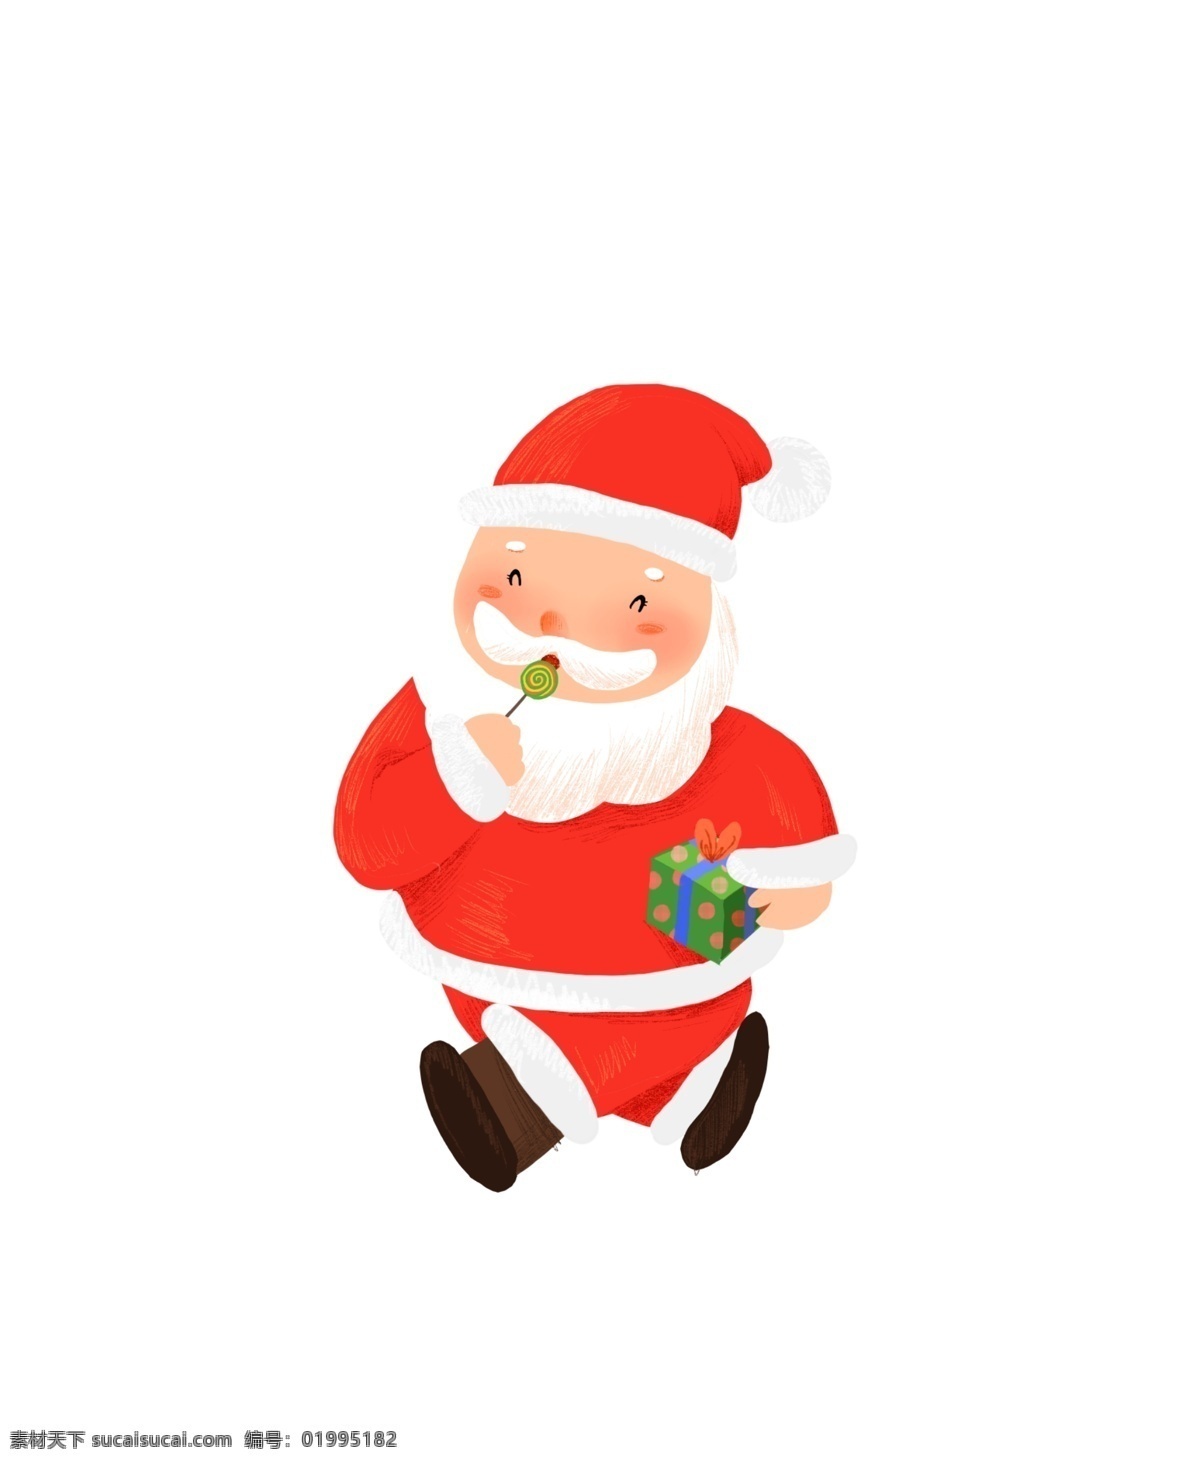 圣诞节 圣诞老人 送礼 物 圣诞 送礼物 吃棒棒糖 手绘 可爱 喜庆 开心 红色 暖色系 礼物 发礼物